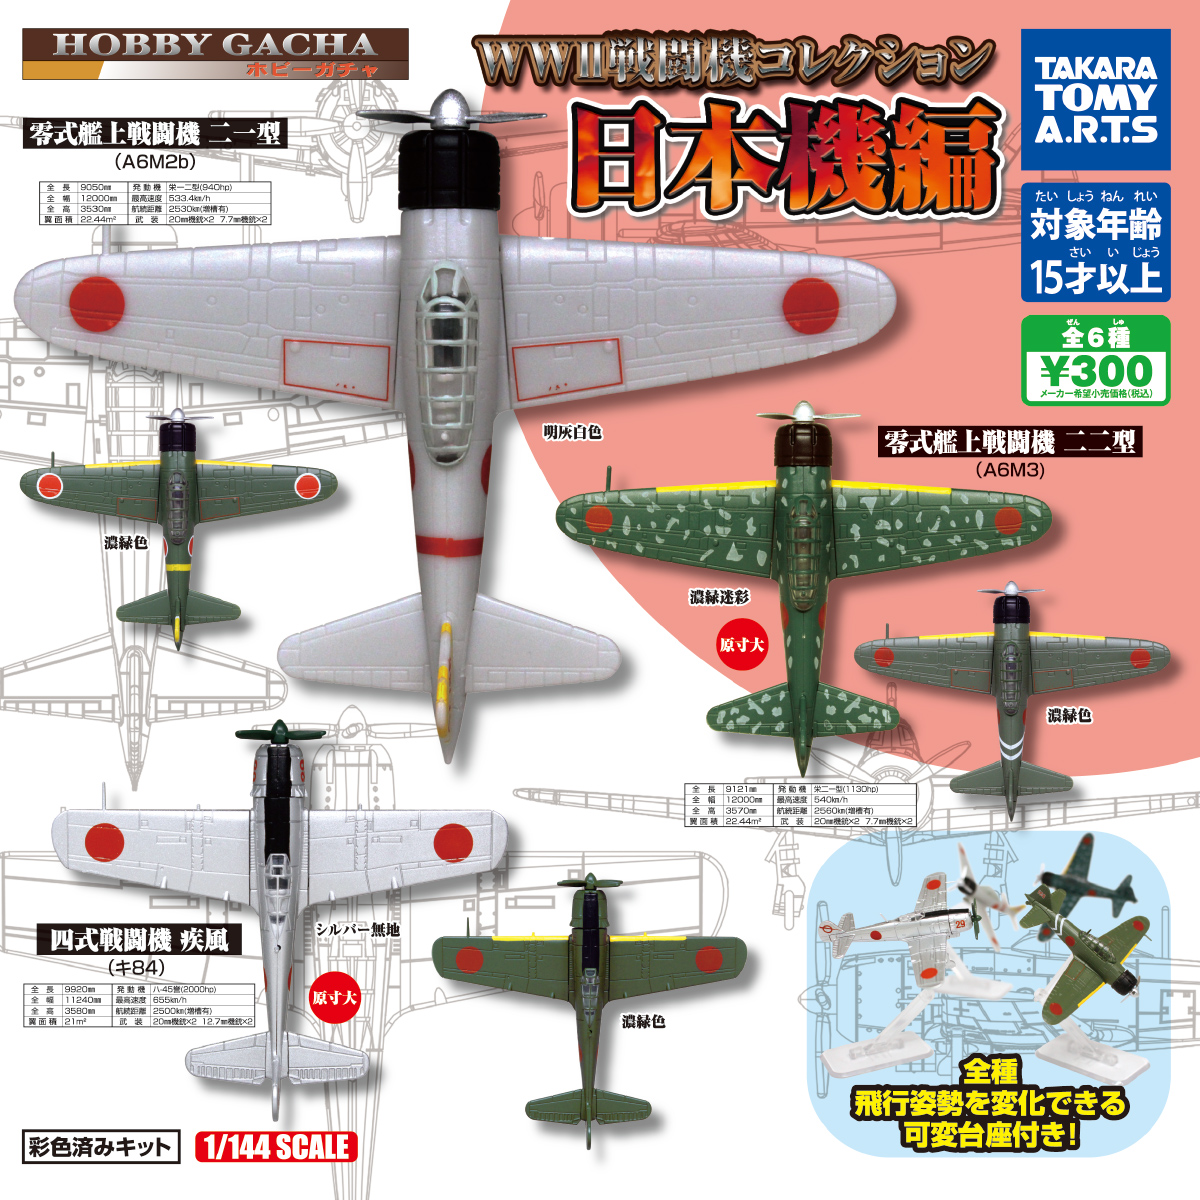 ホビーガチャ Ww 戦闘機コレクション 日本機編 商品情報 タカラトミーアーツ